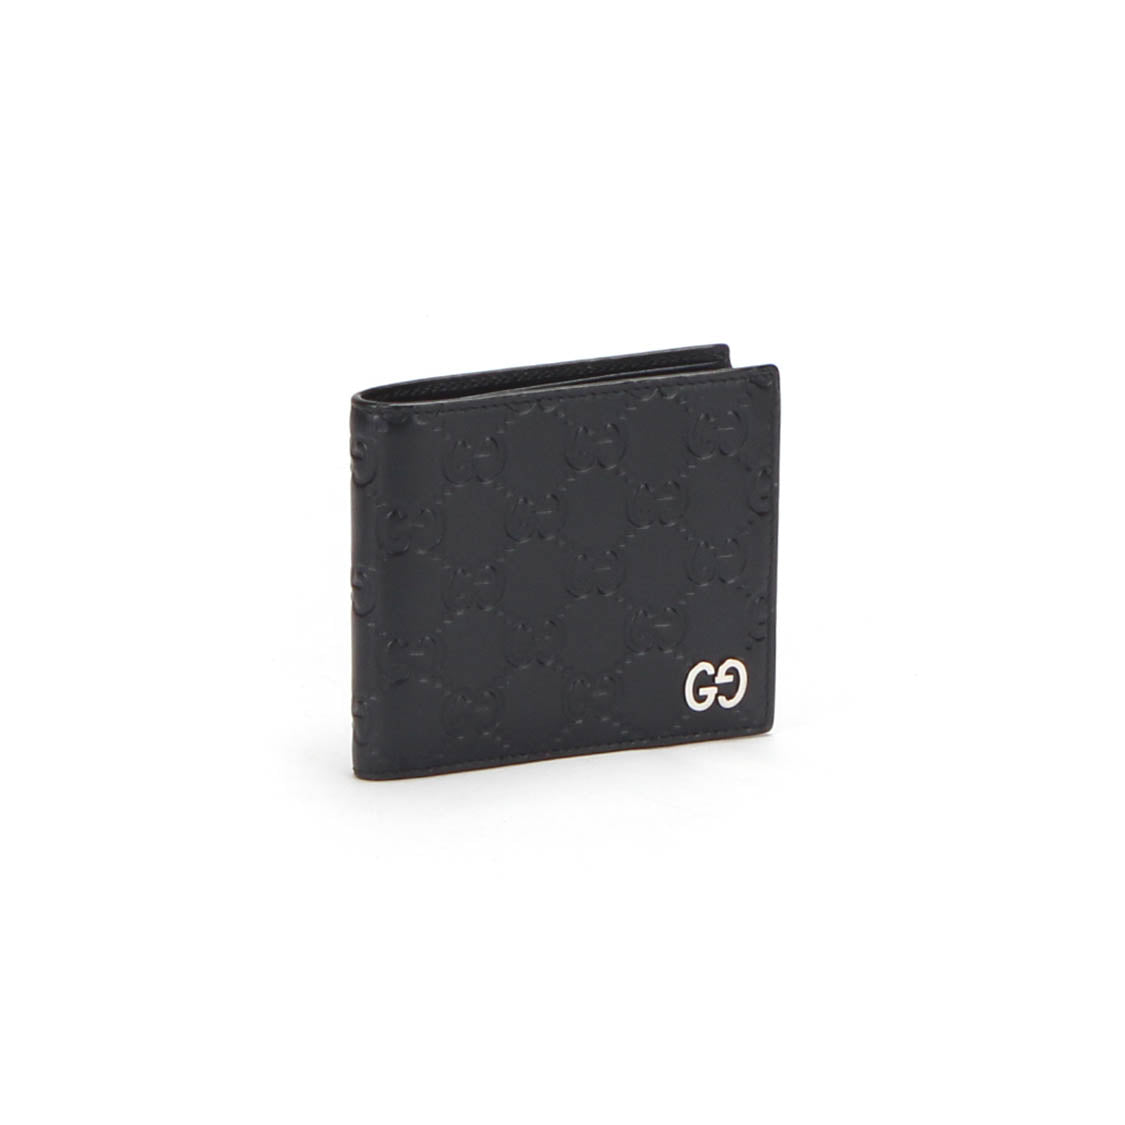 Guccissima Signature Bi-Fold Small Wallet 473922